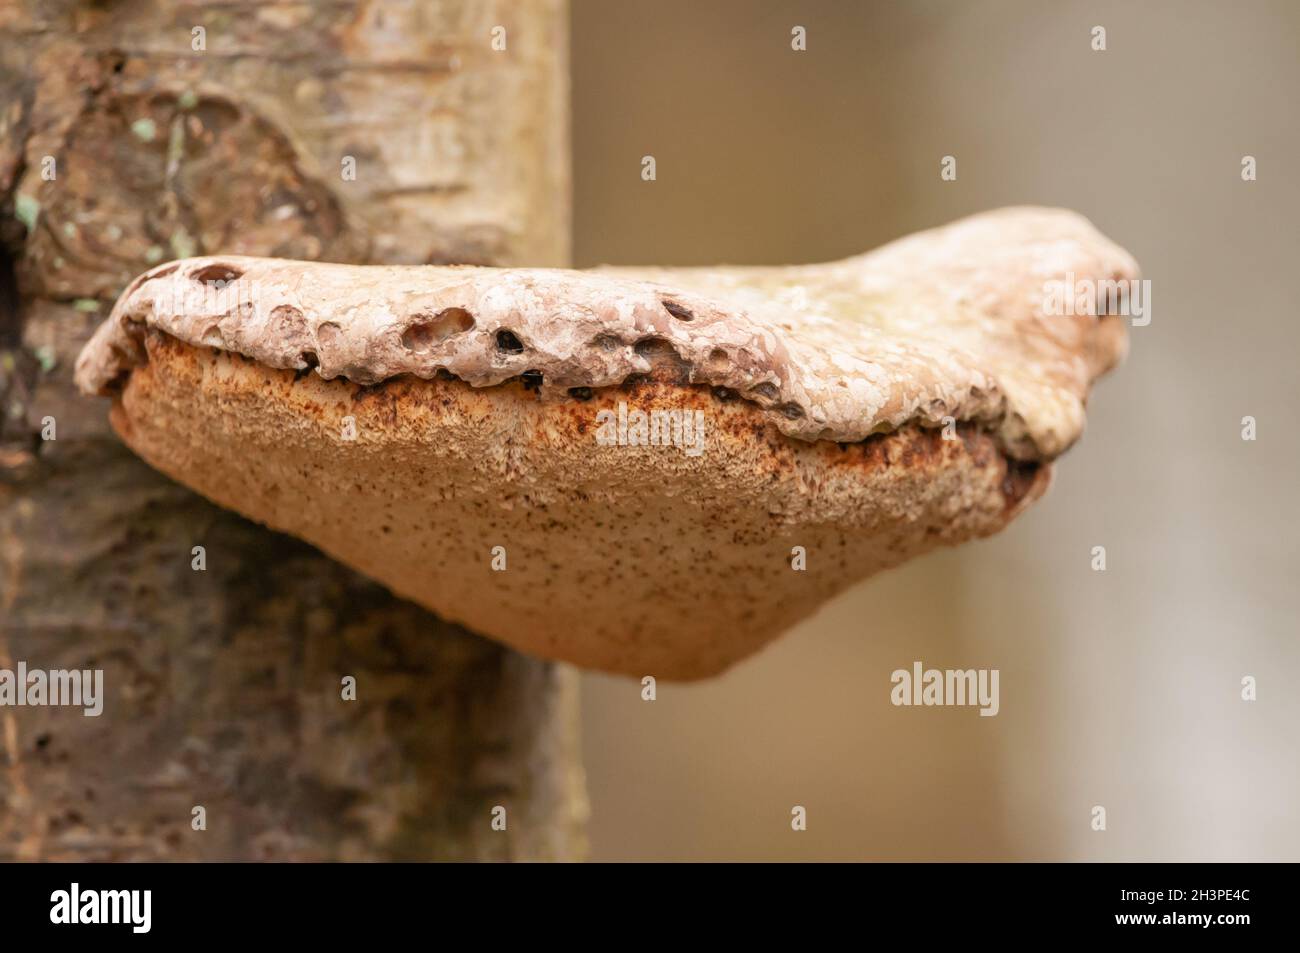 Tree sponges Stock Photo